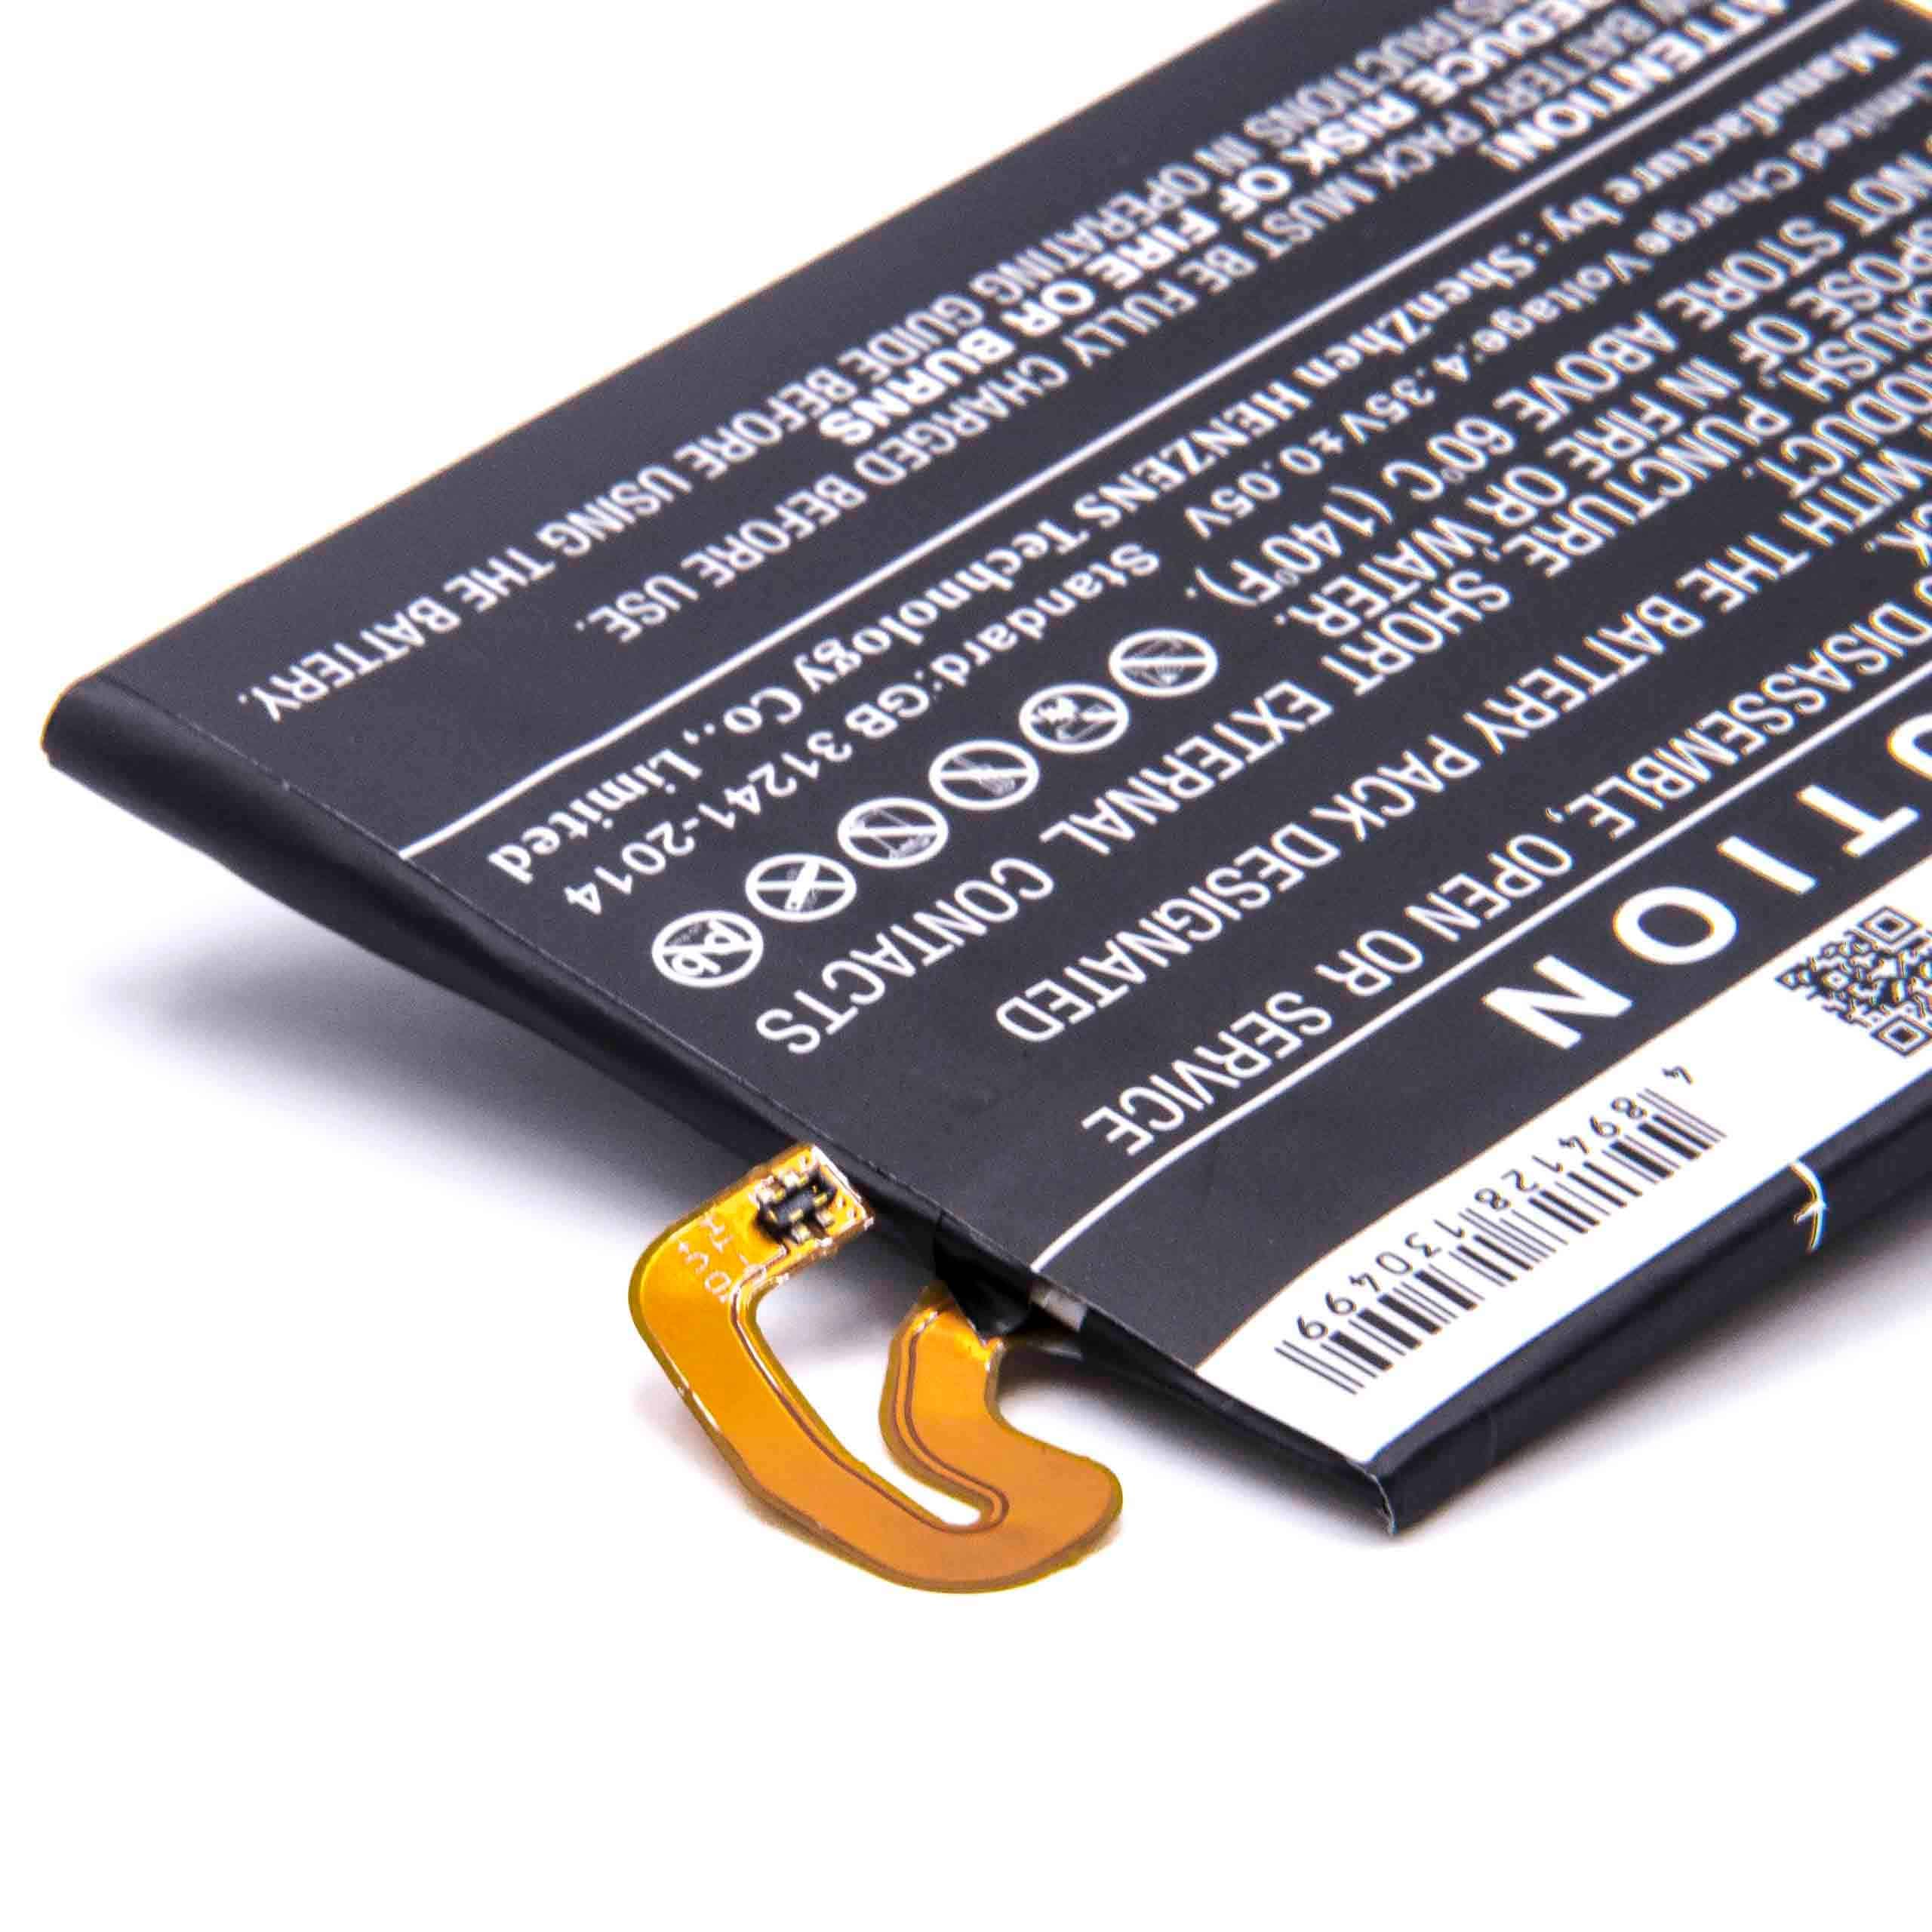 Batterie remplace LG EAC63438701, BL-T32 pour téléphone portable - 3300mAh, 3,8V, Li-polymère